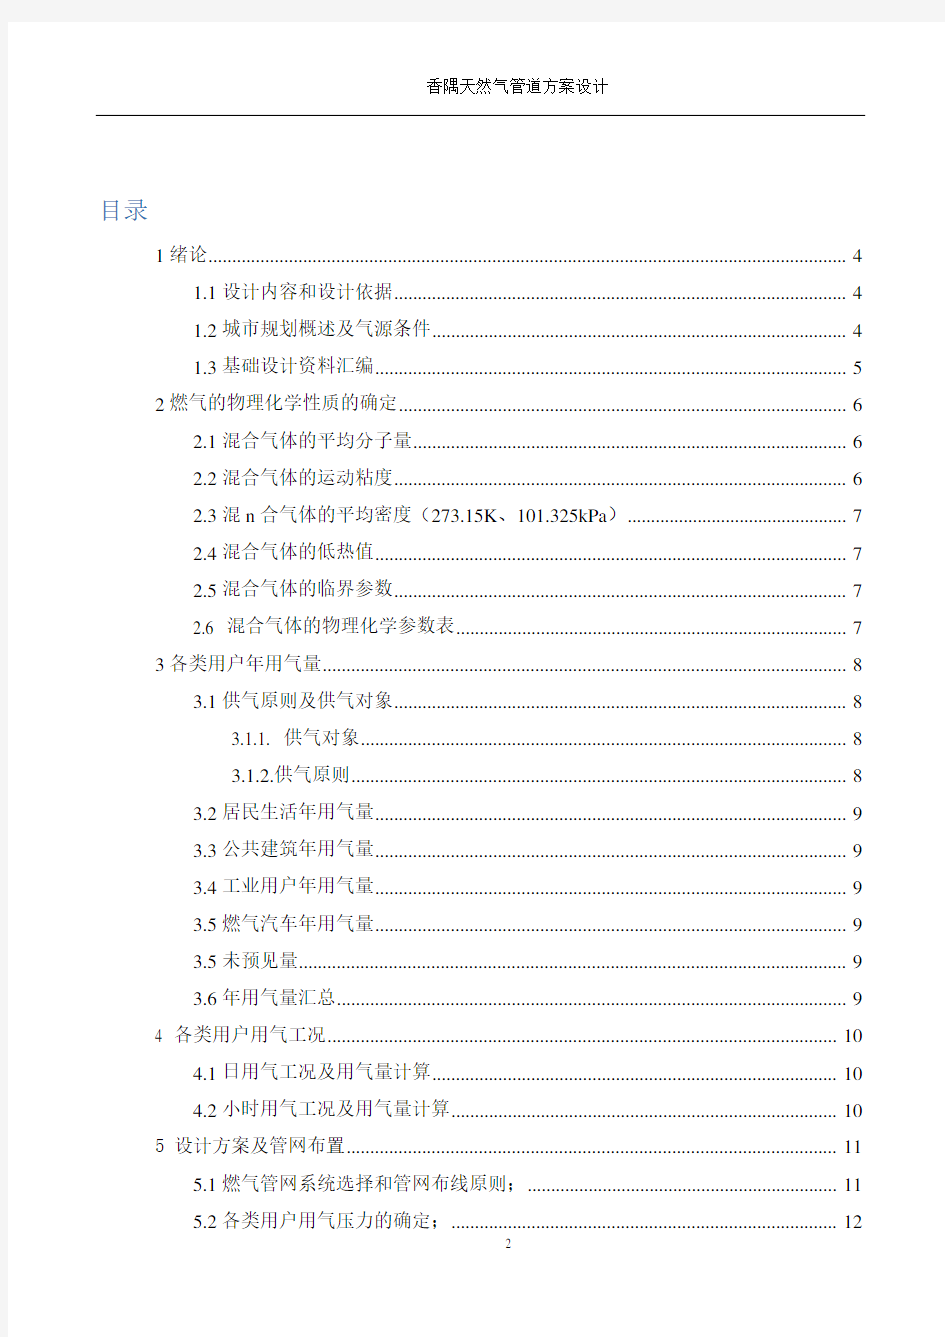 重庆大学燃气输配课程设计方案报告书